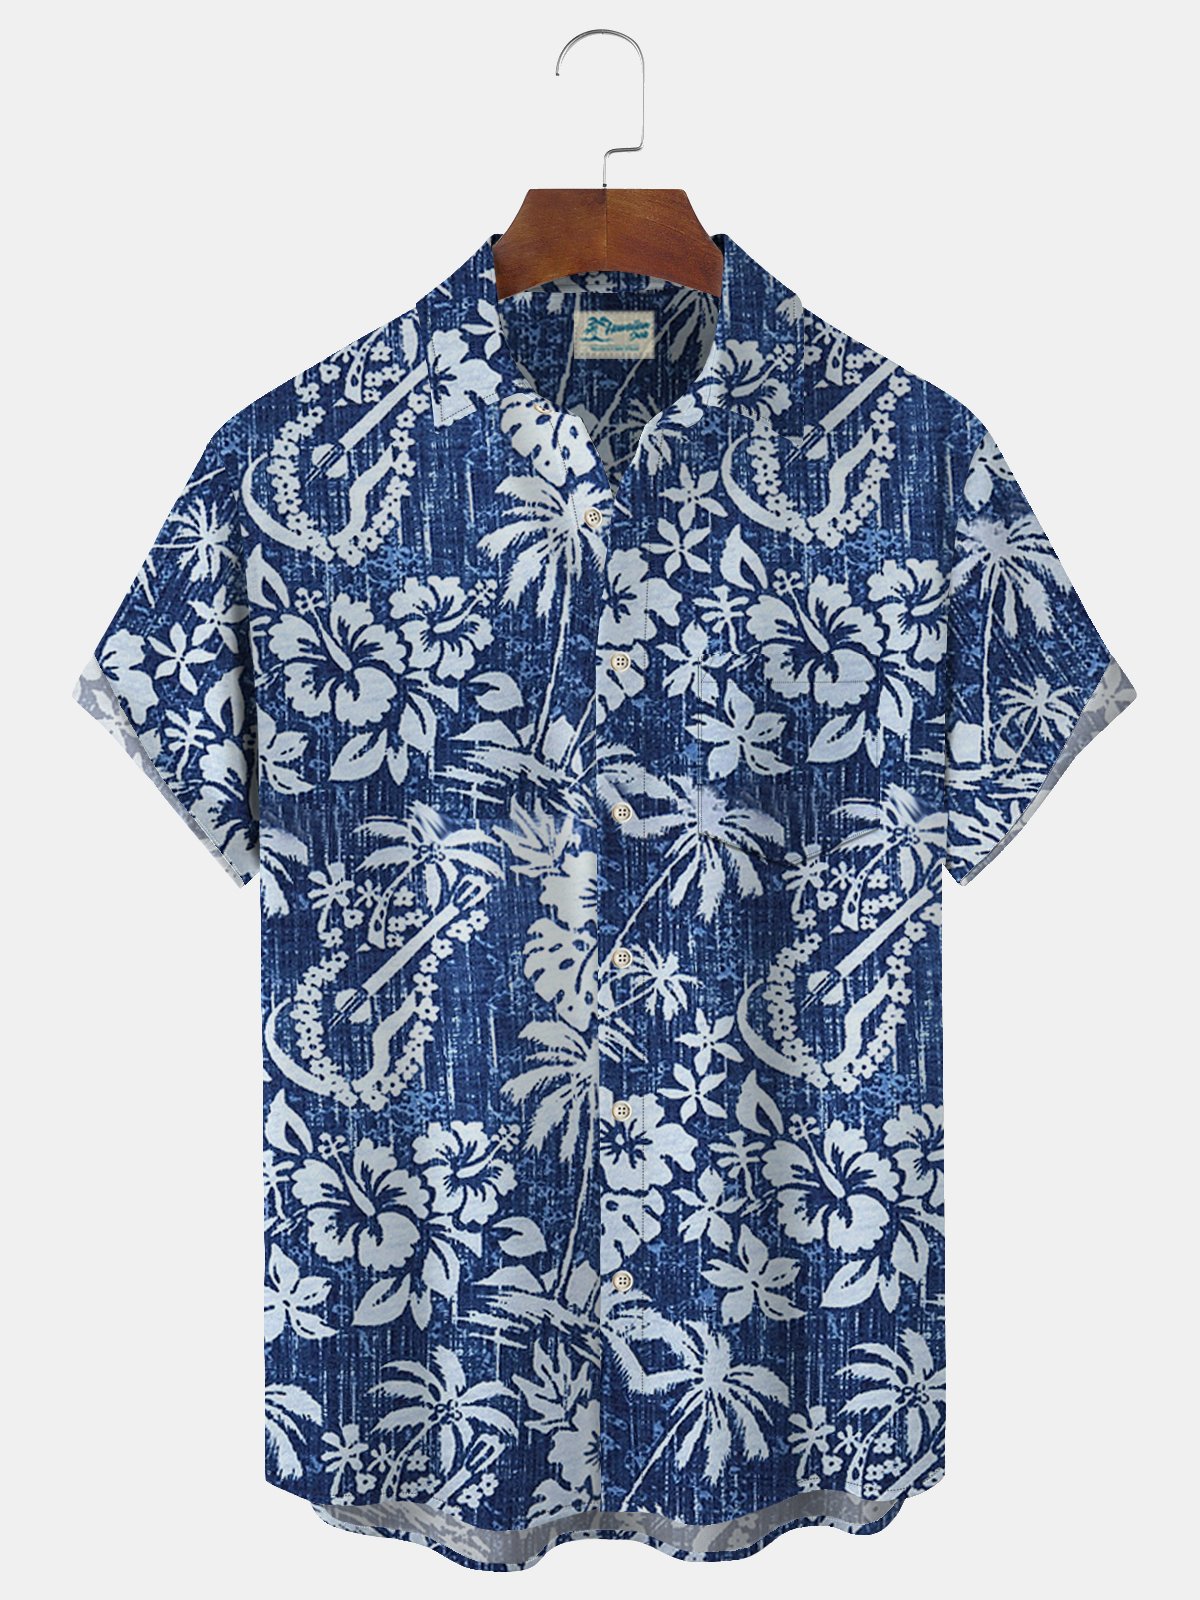 Royaura Hawaiian Botanical Floral Print Men's Button Pocket Shirt